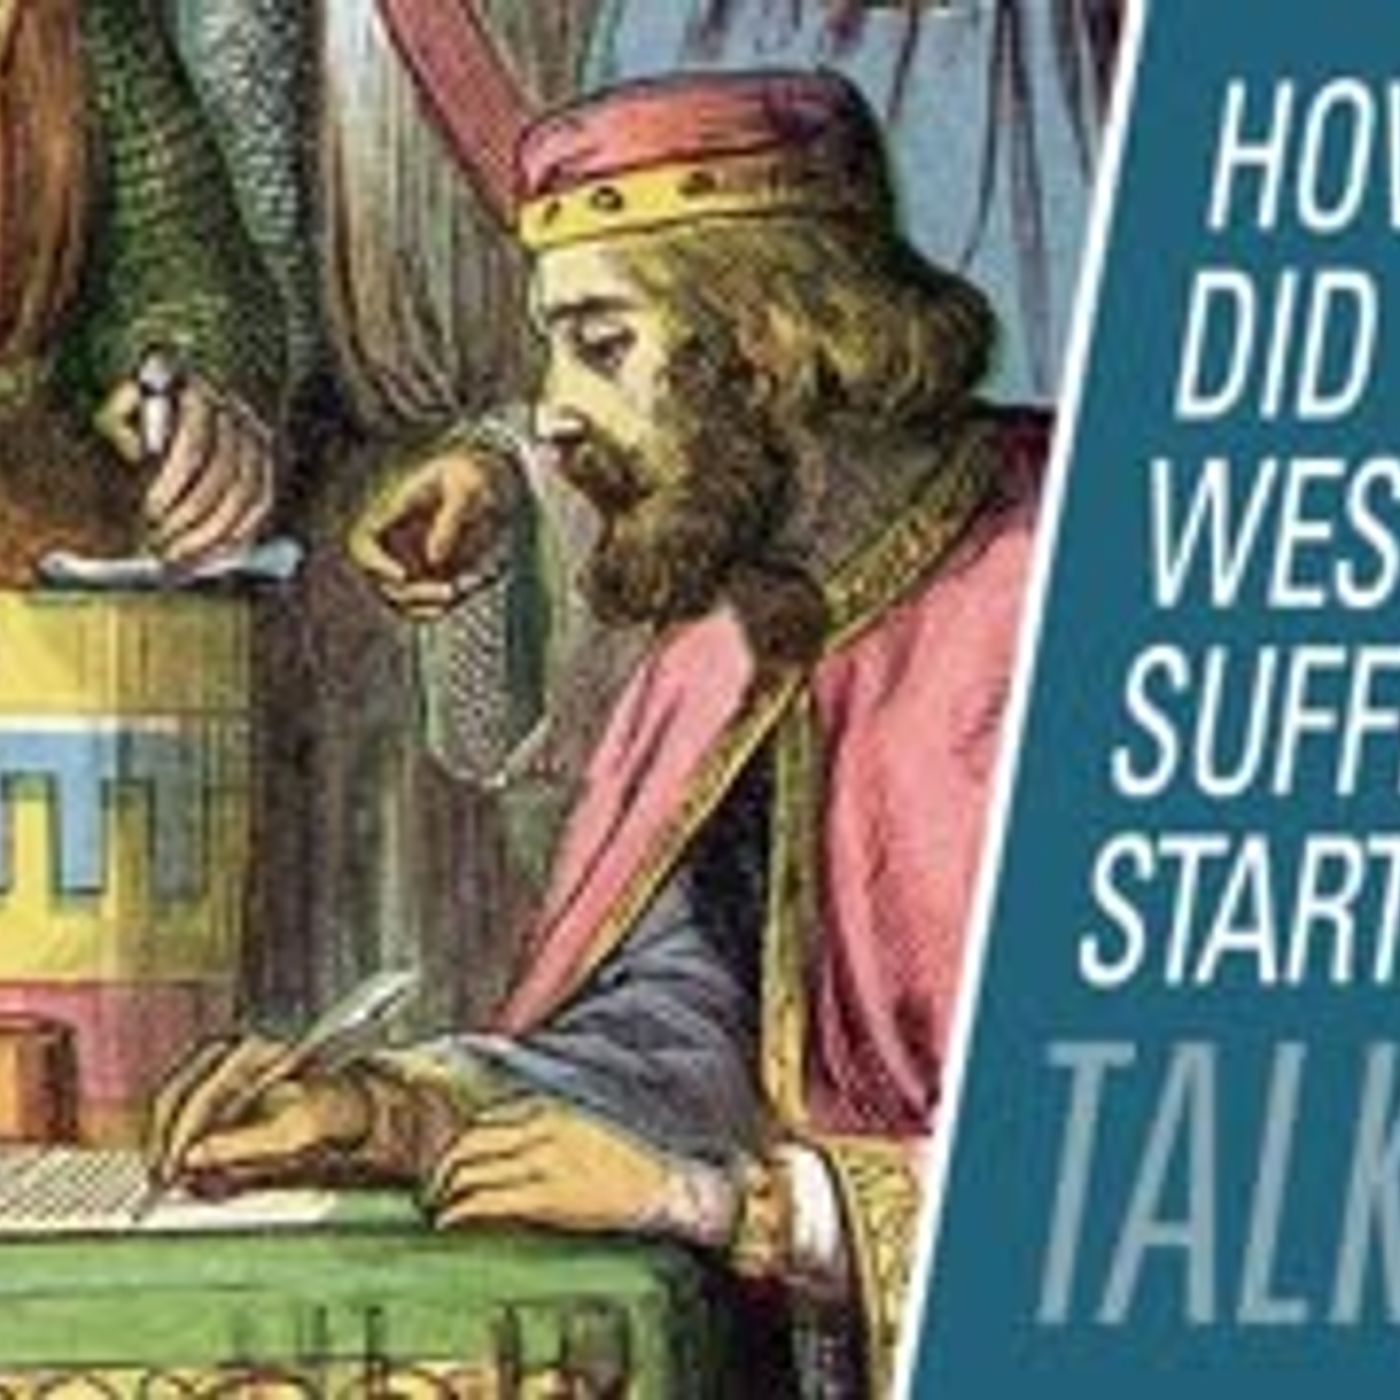 How did western suffrage start? | HBR Talk 302